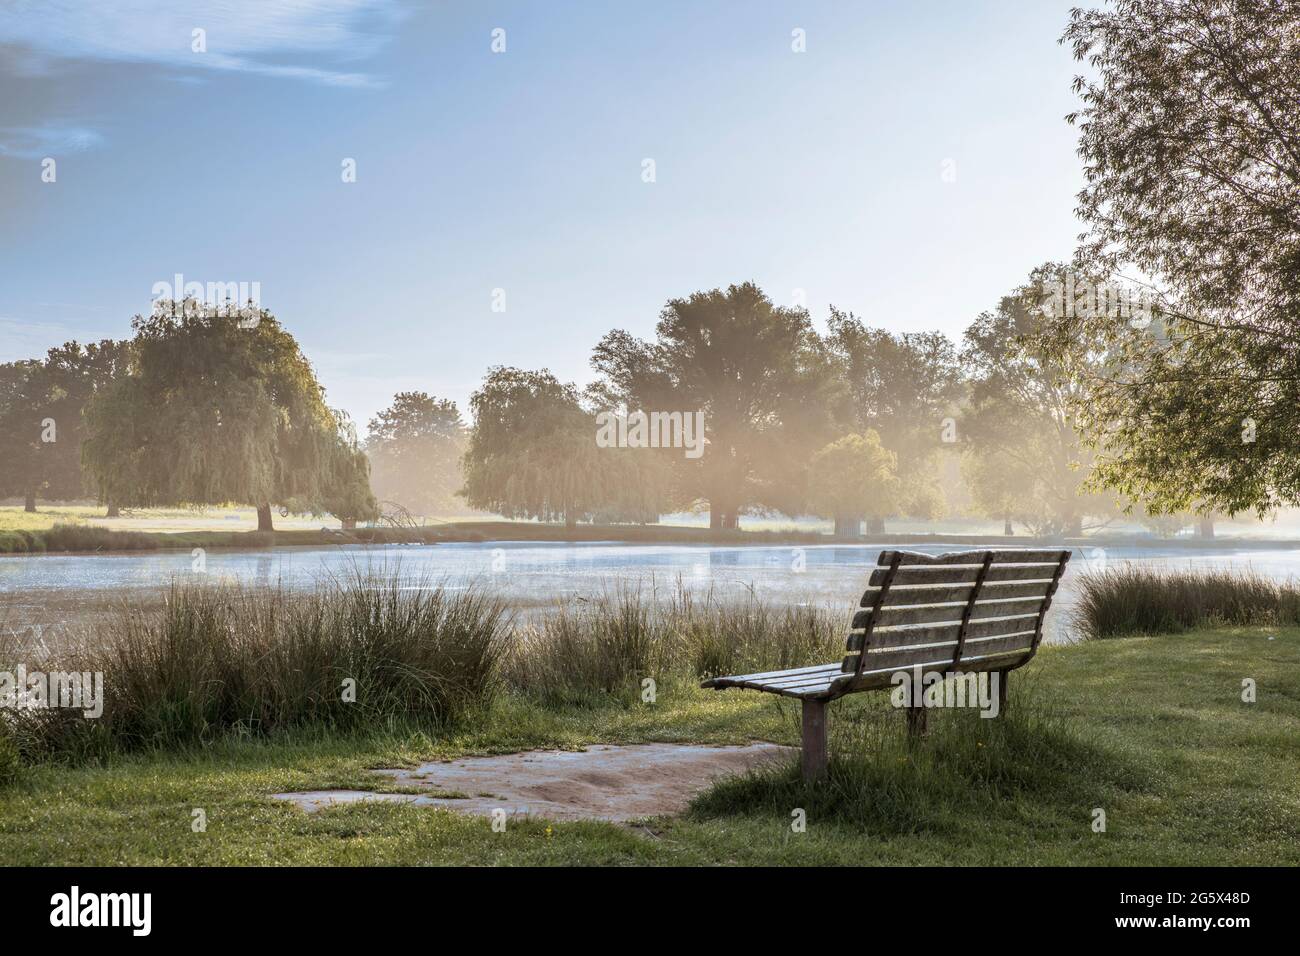 Frühe Sonne und Nebel am Reiher Teich im Buschy Park Surrey Wenn ich auf öffentlichem oder privatem Grundstück bin, bin ich bereit, die volle Verantwortung für jedes Copyright o zu übernehmen Stockfoto